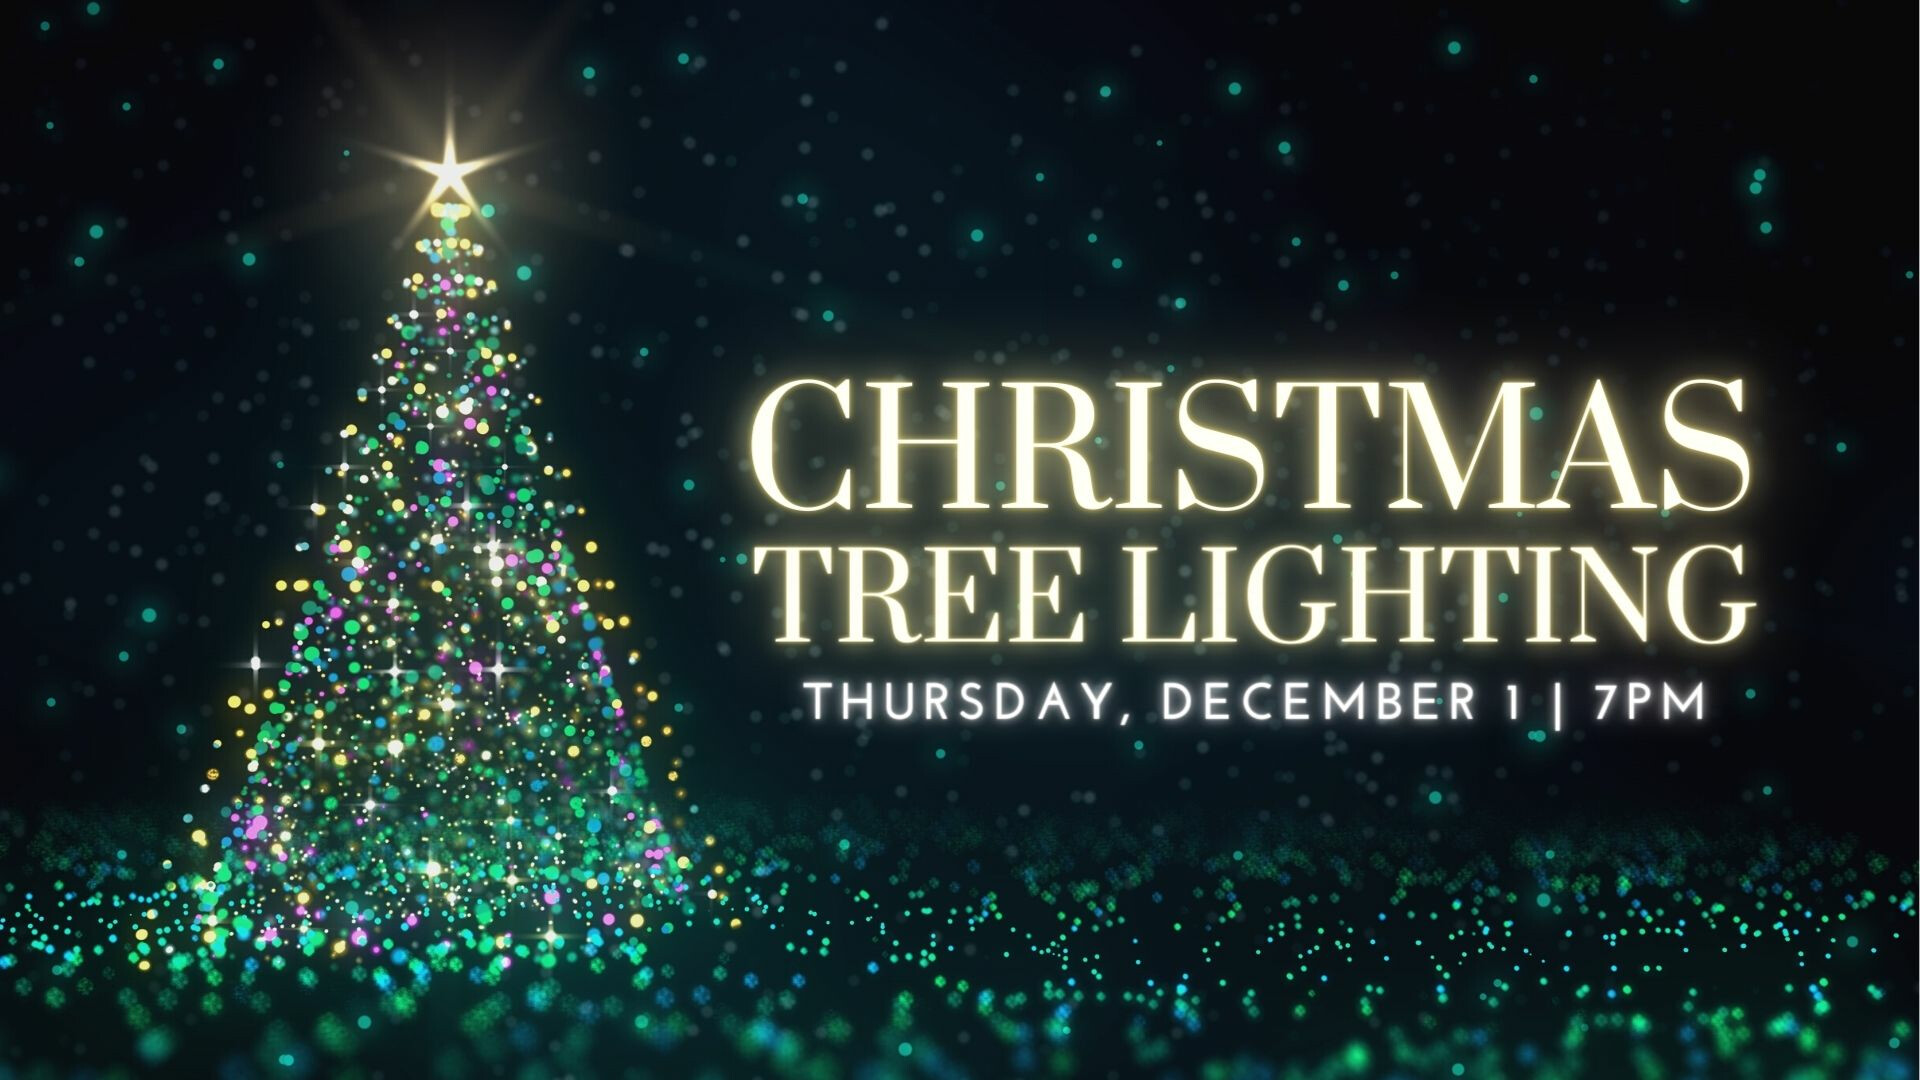 Lighting of the Christmas Tree